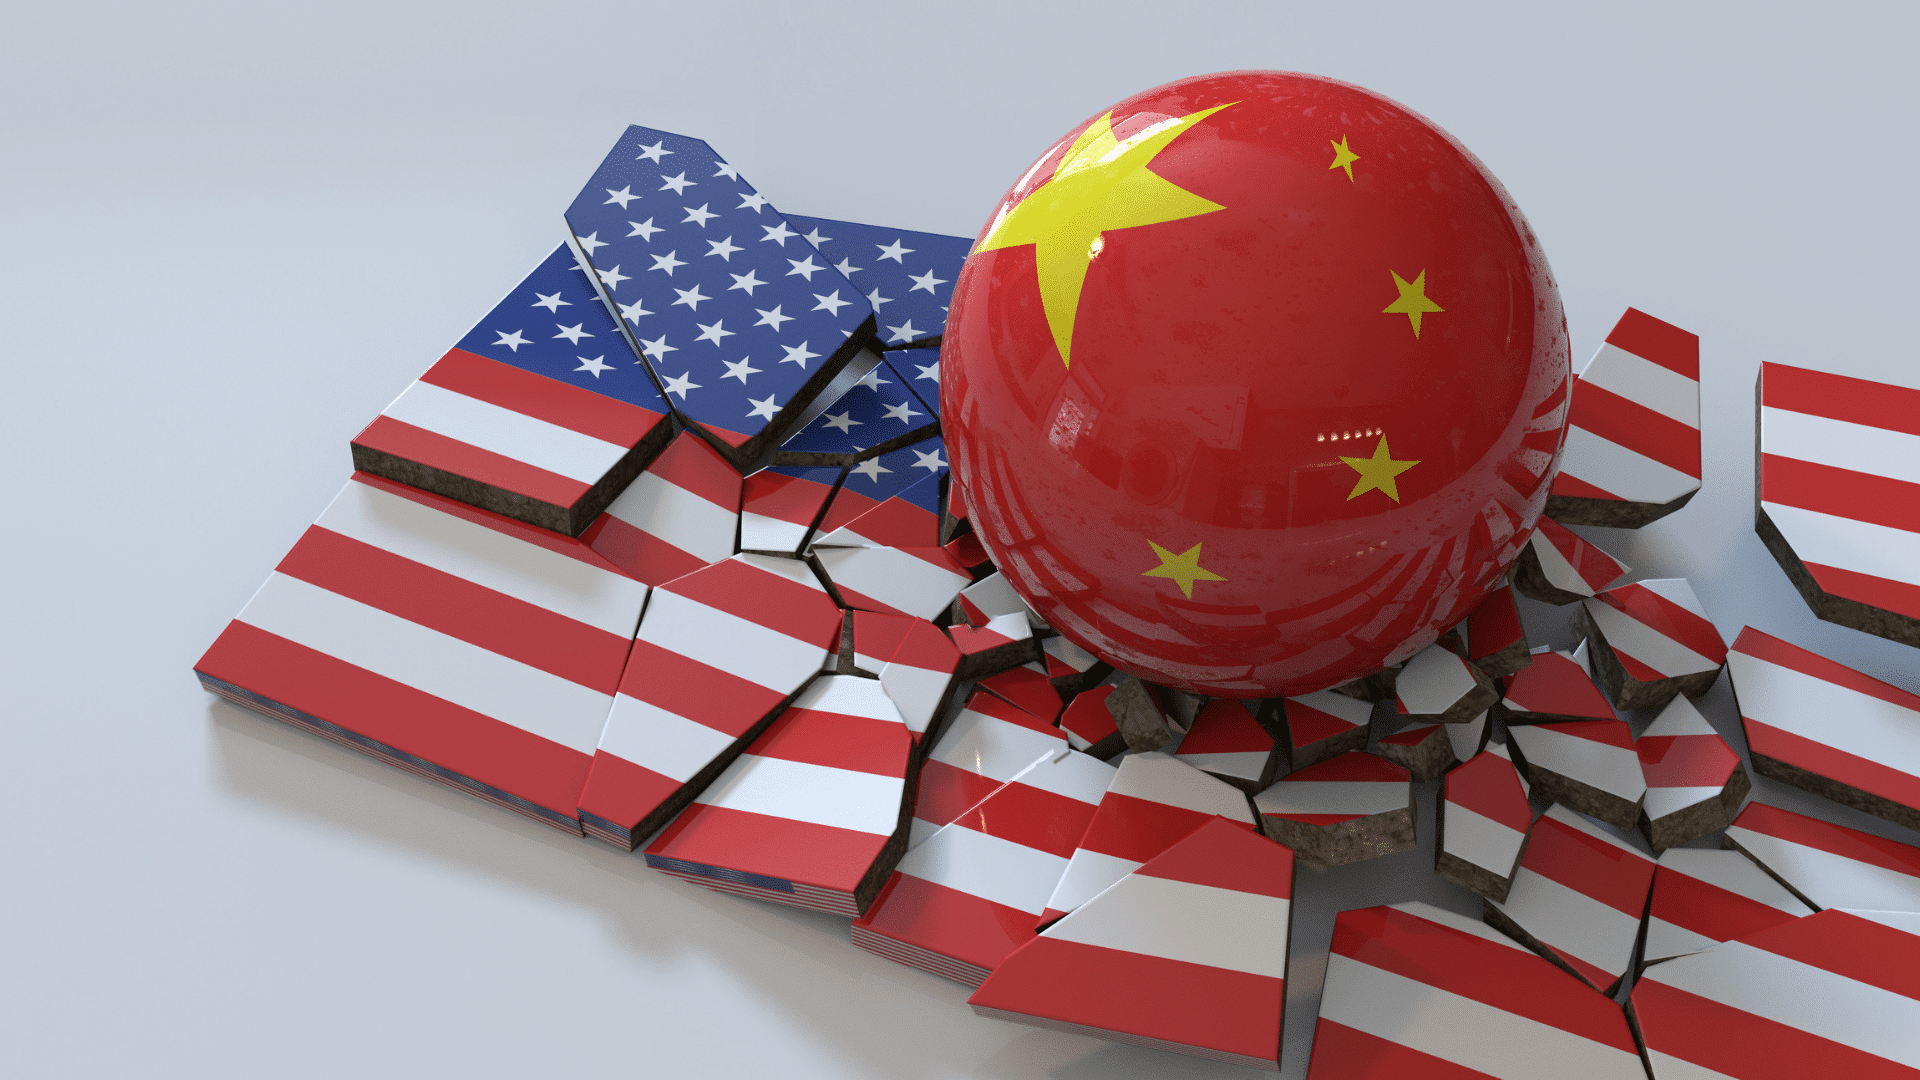 مايكروسوفت تحذر: قراصنة الصين يخترقون البنية التحتية الأمريكية